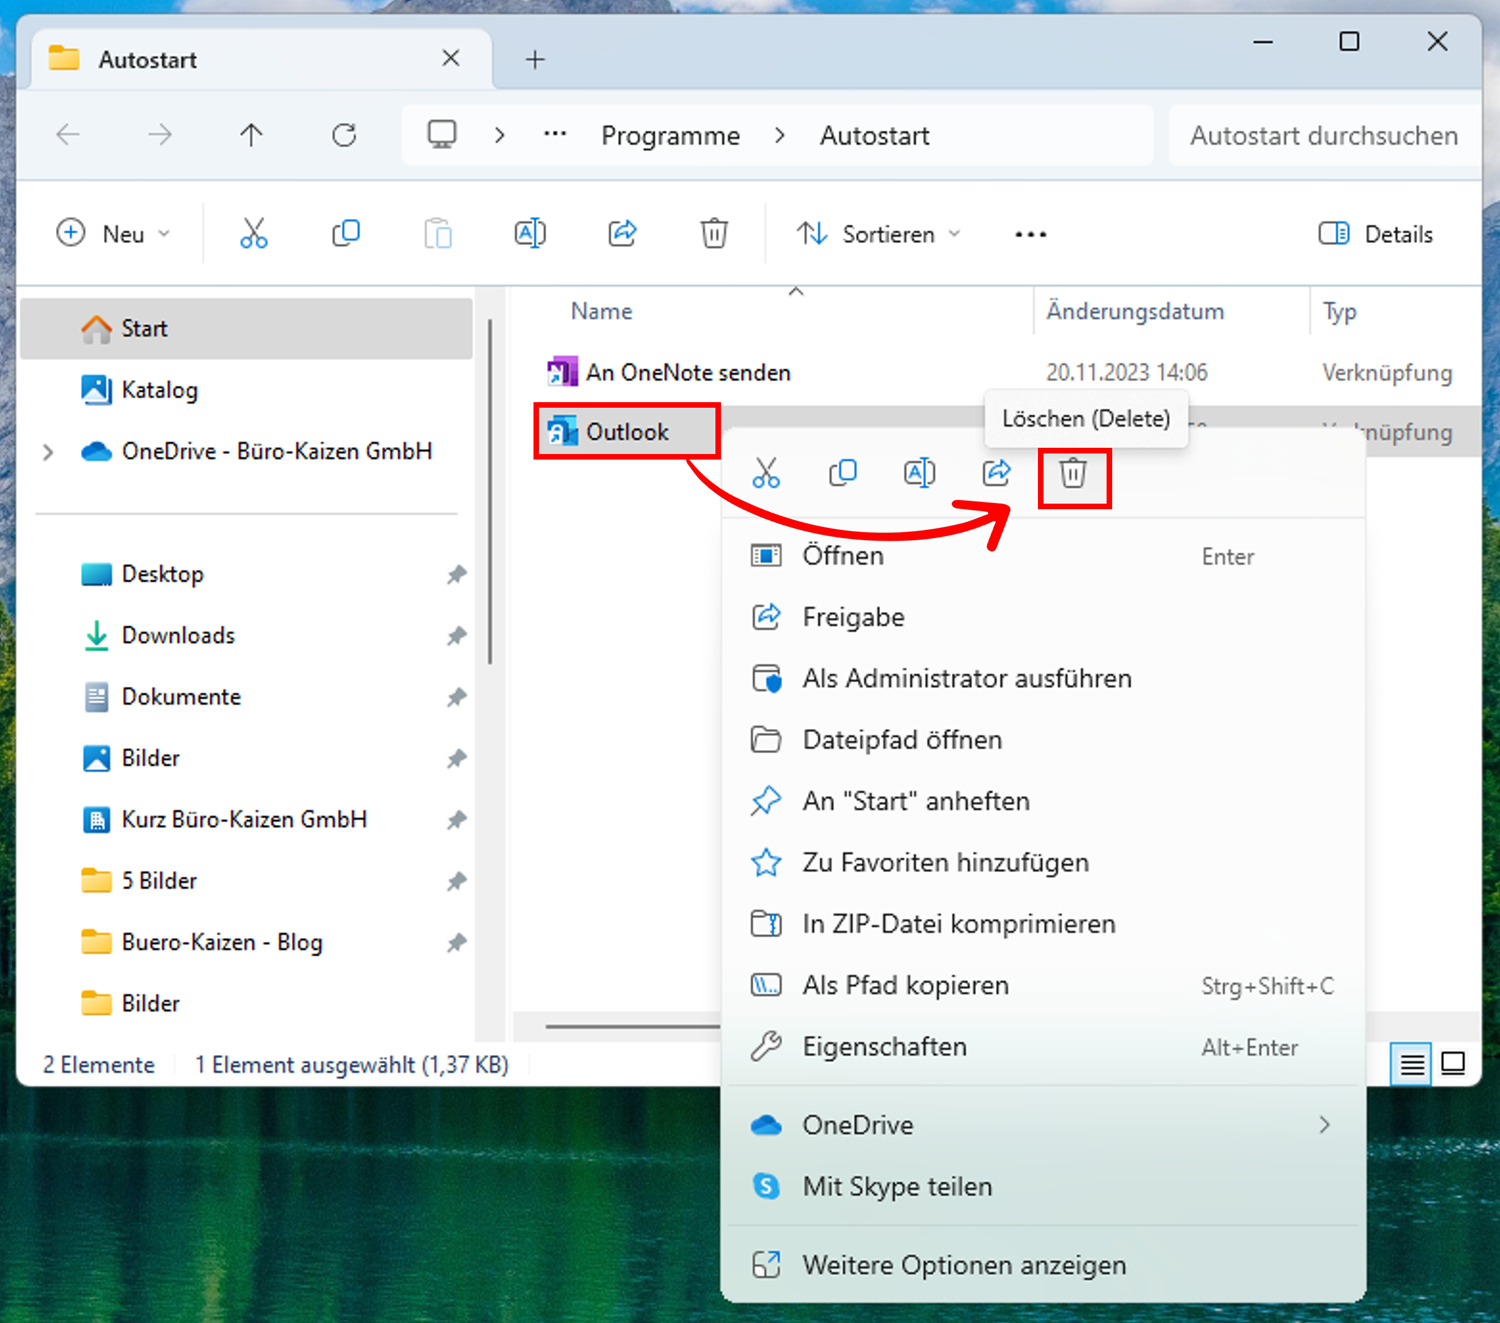 Sie können den Outlook Autostart deaktivieren, indem Sie Outlook aus dem Autostart-Ordner löschen.